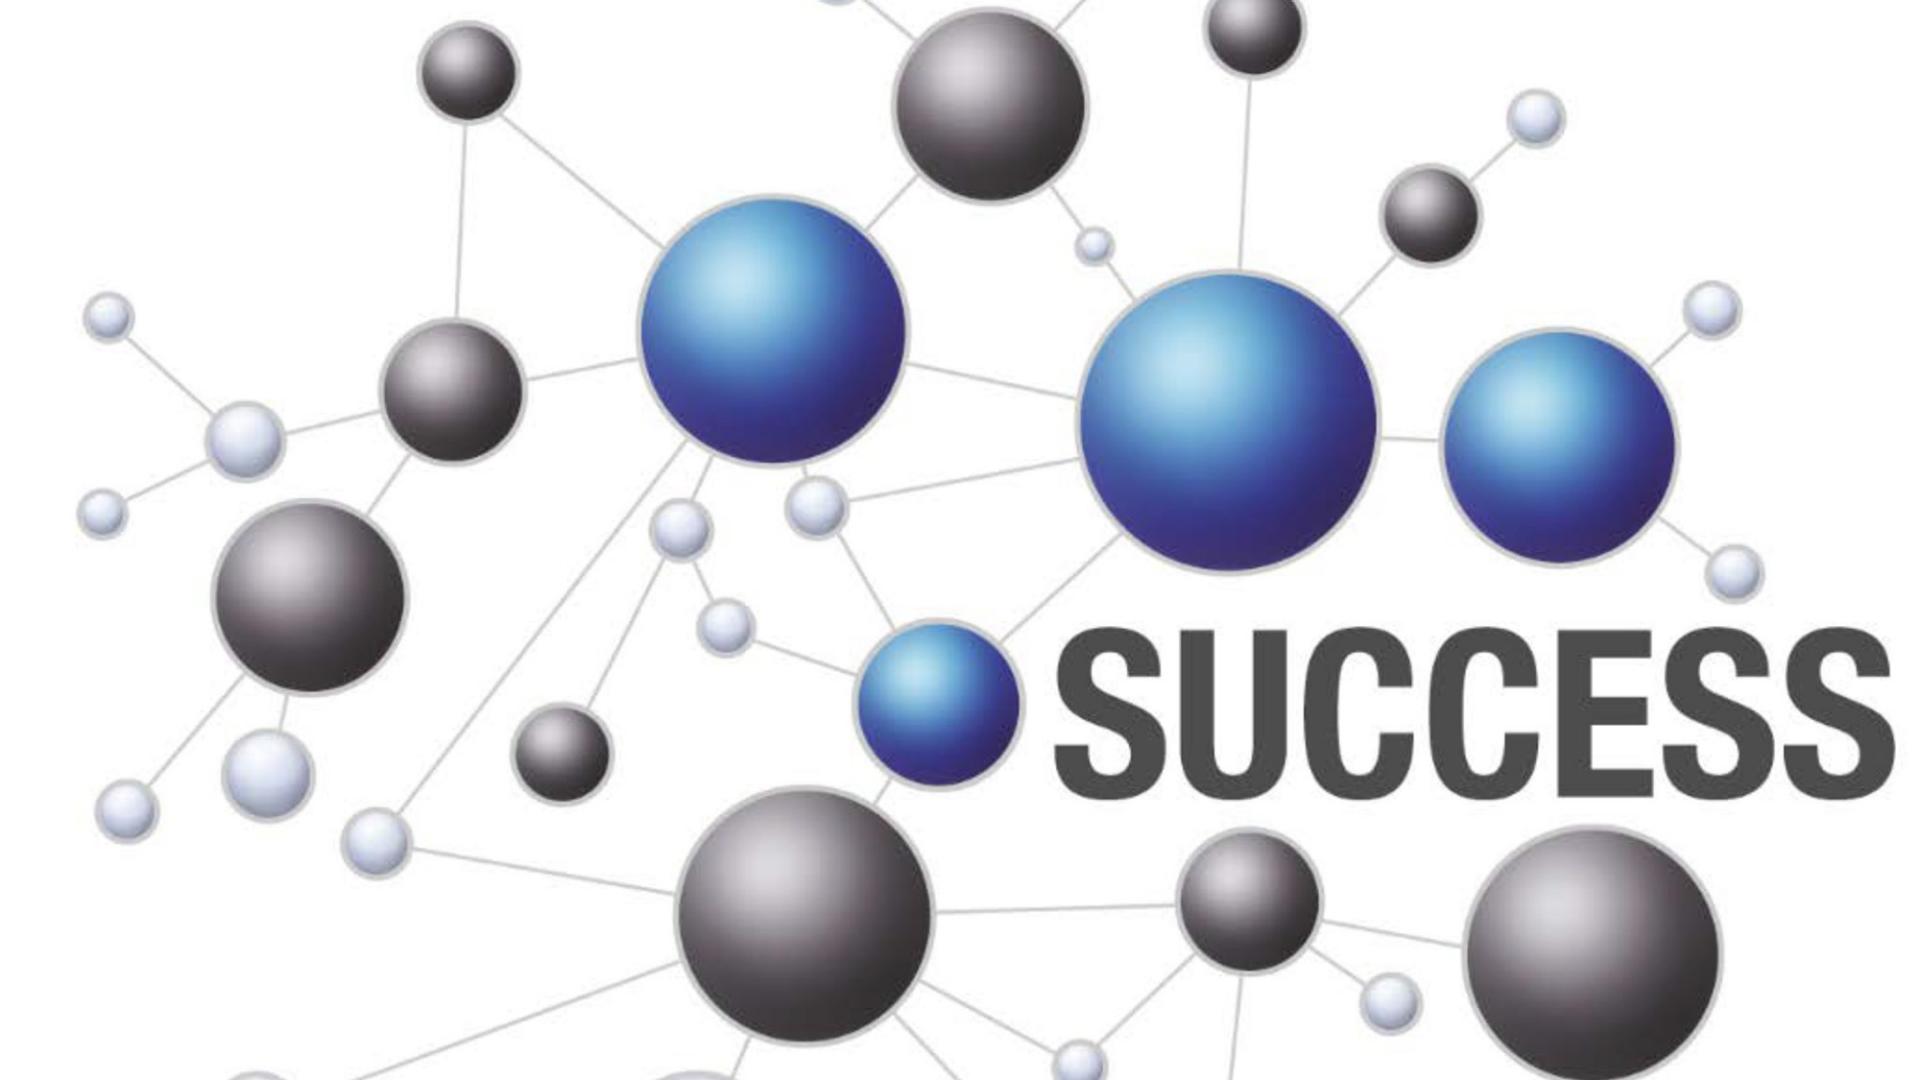 Das Logo für das Thema Success bei der SMT zeigt miteinander vernetzte Punkte - das Partnernetzwerk 